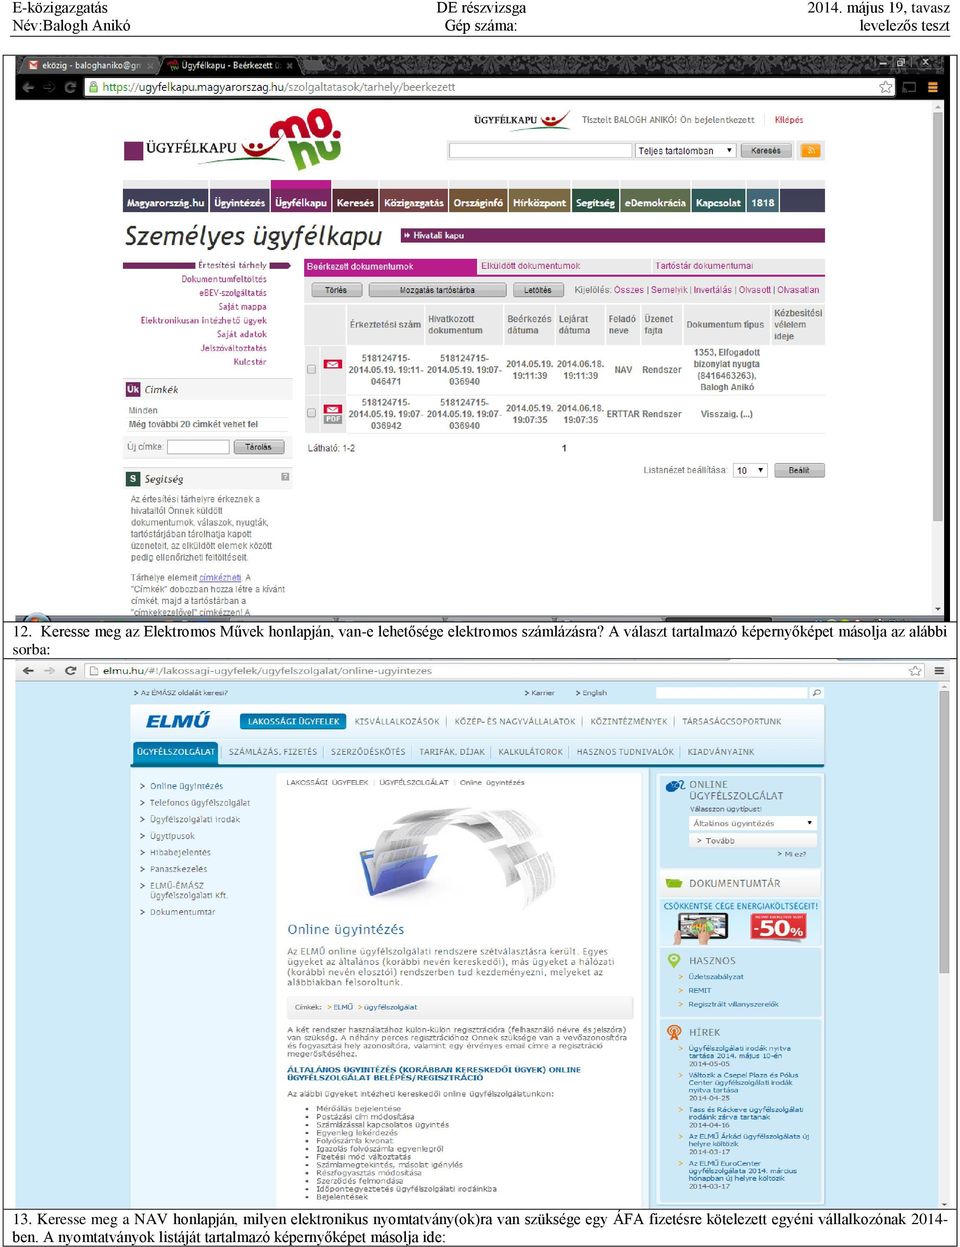 Keresse meg a NAV honlapján, milyen elektronikus nyomtatvány(ok)ra van szüksége egy ÁFA